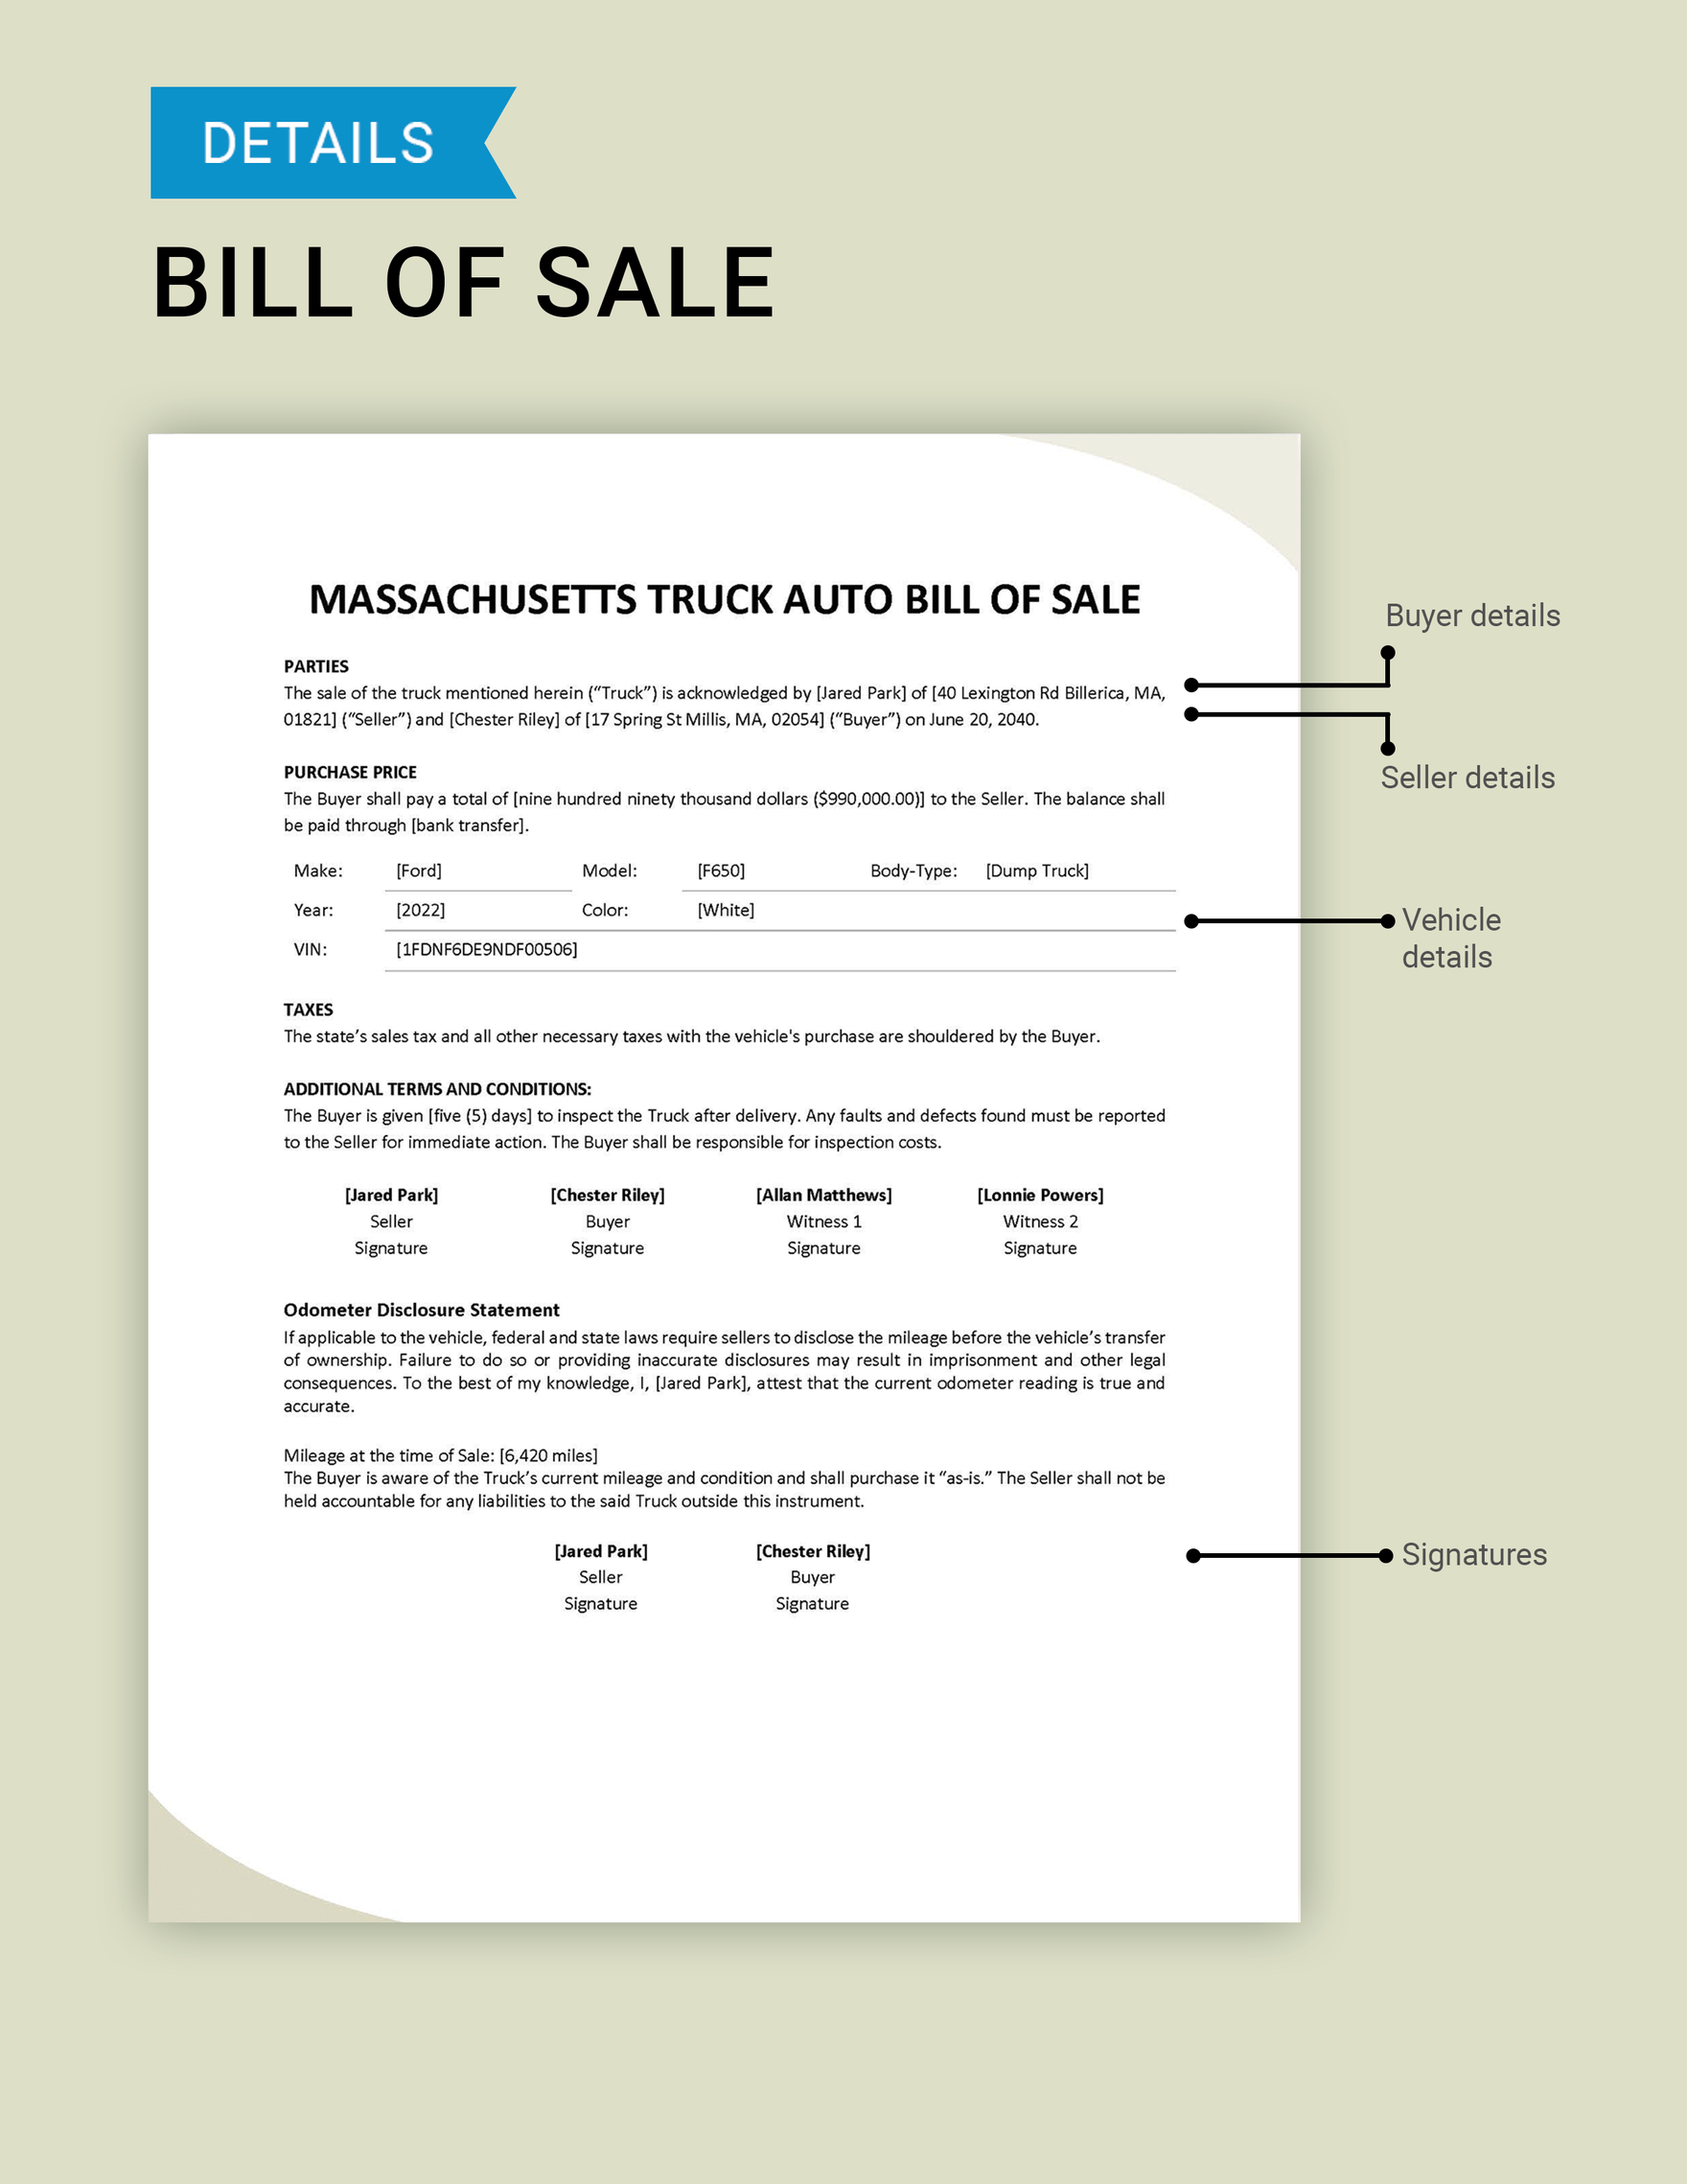 Massachusetts Truck Bill of Sale Template